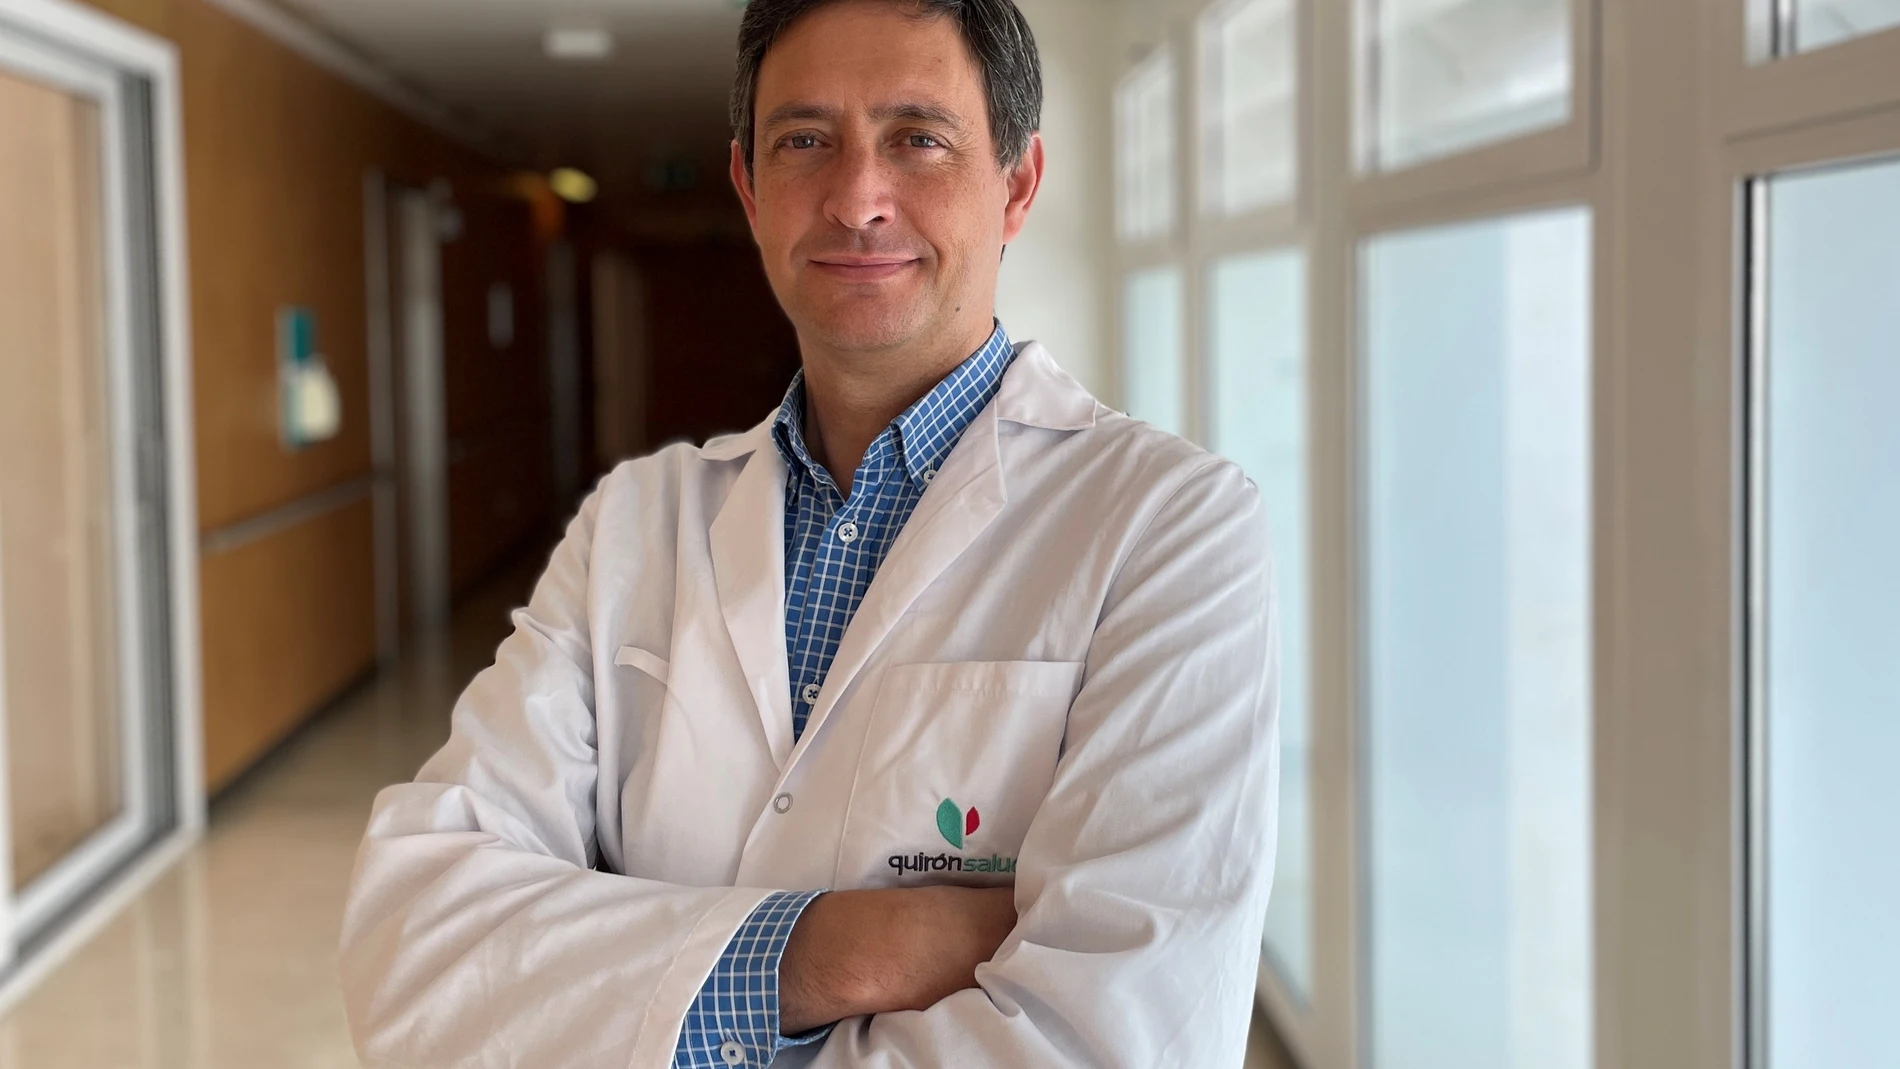 El doctor Domingo Ventura, anestesiólogo de la Unidad del Dolor del Hospital Quirónsalud Infanta Luisa de Sevilla